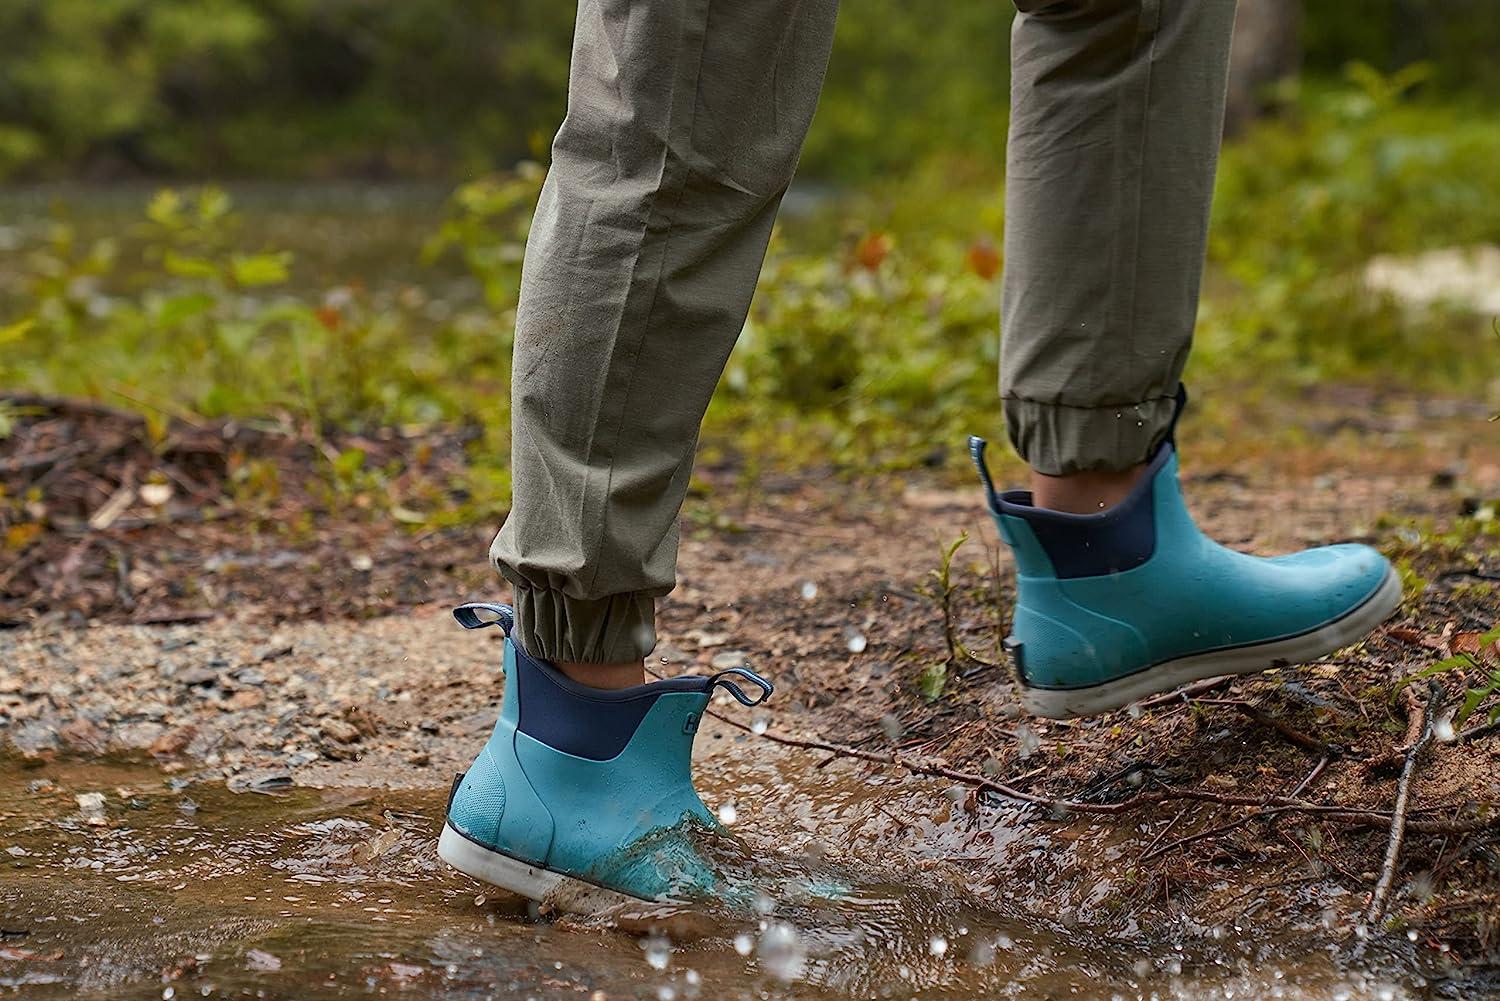 HUK Women's Rogue Wave Shoe, Fishing & Deck Boot Rain